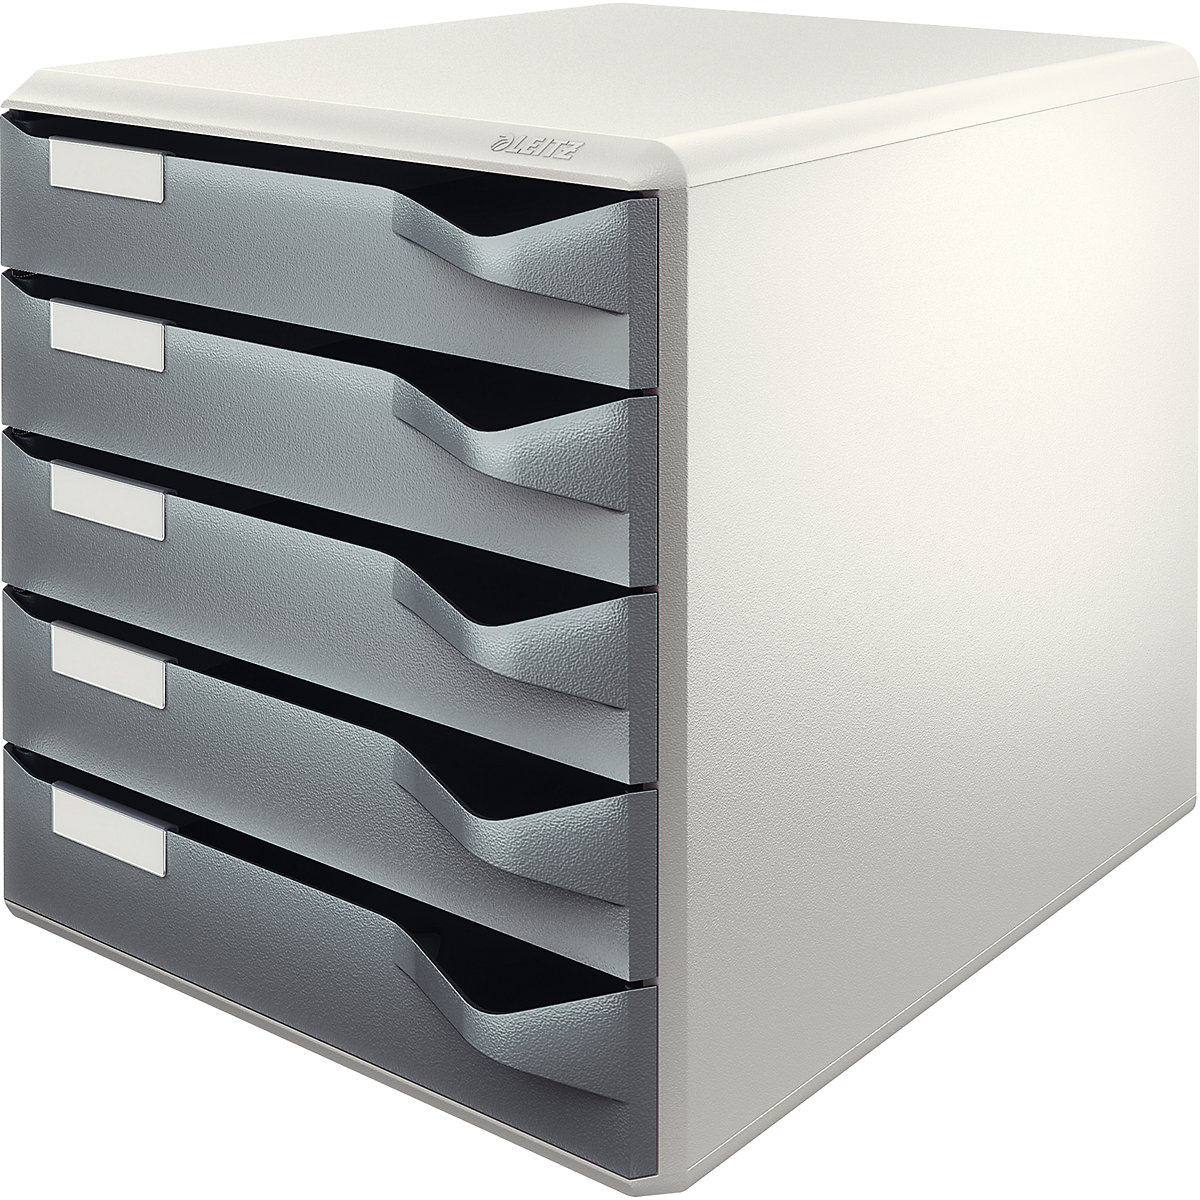 Pojemnik – Leitz, zestaw pojemników na pocztę i formularze, kolor obudowy: szary, kolor szuflad: ciemnoszary, 5 szuflad